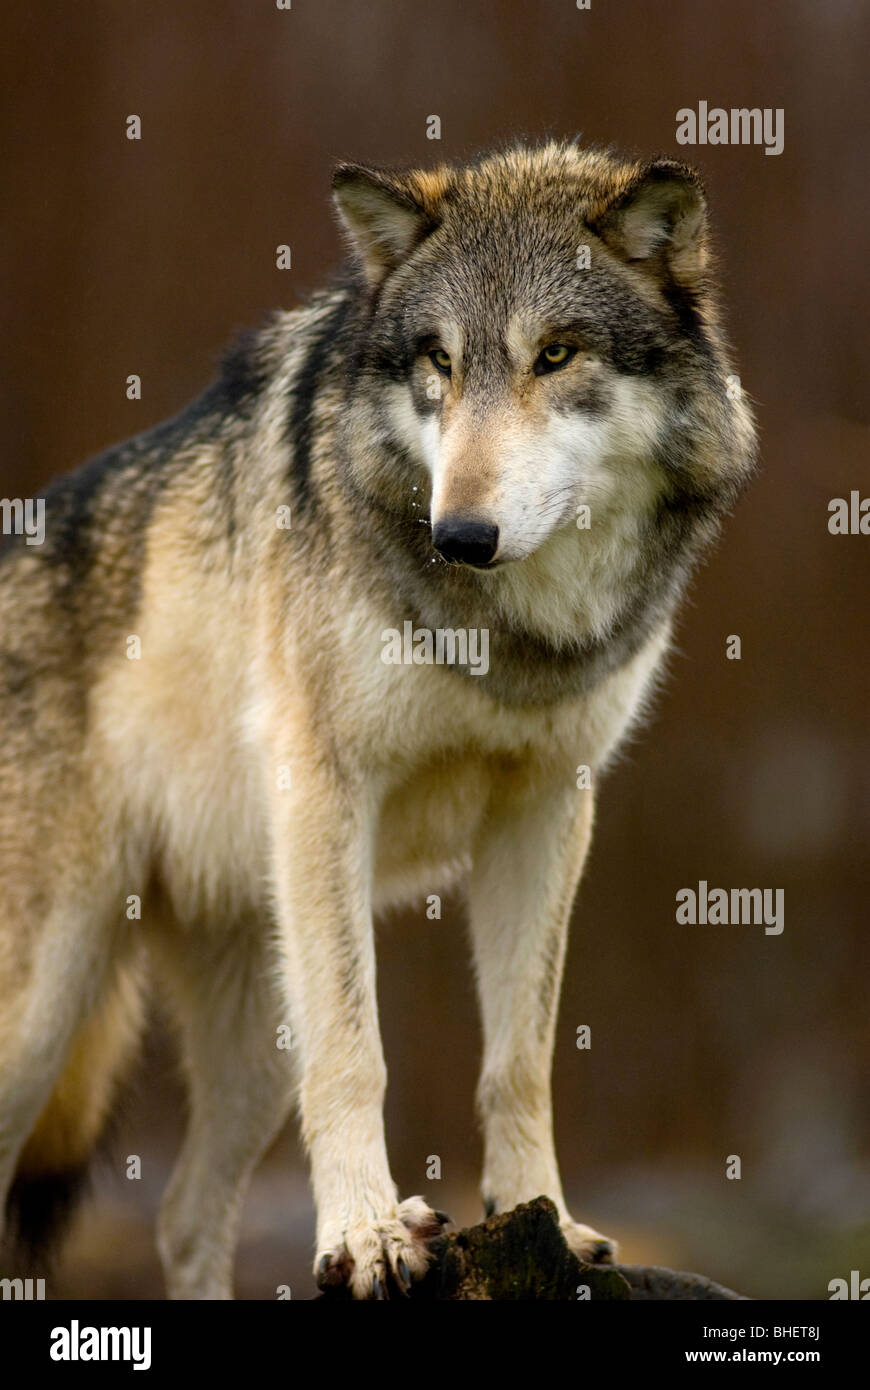 Este Lobo está de pie a unos 5 pies por encima del suelo, observar sus alrededores. Foto de stock